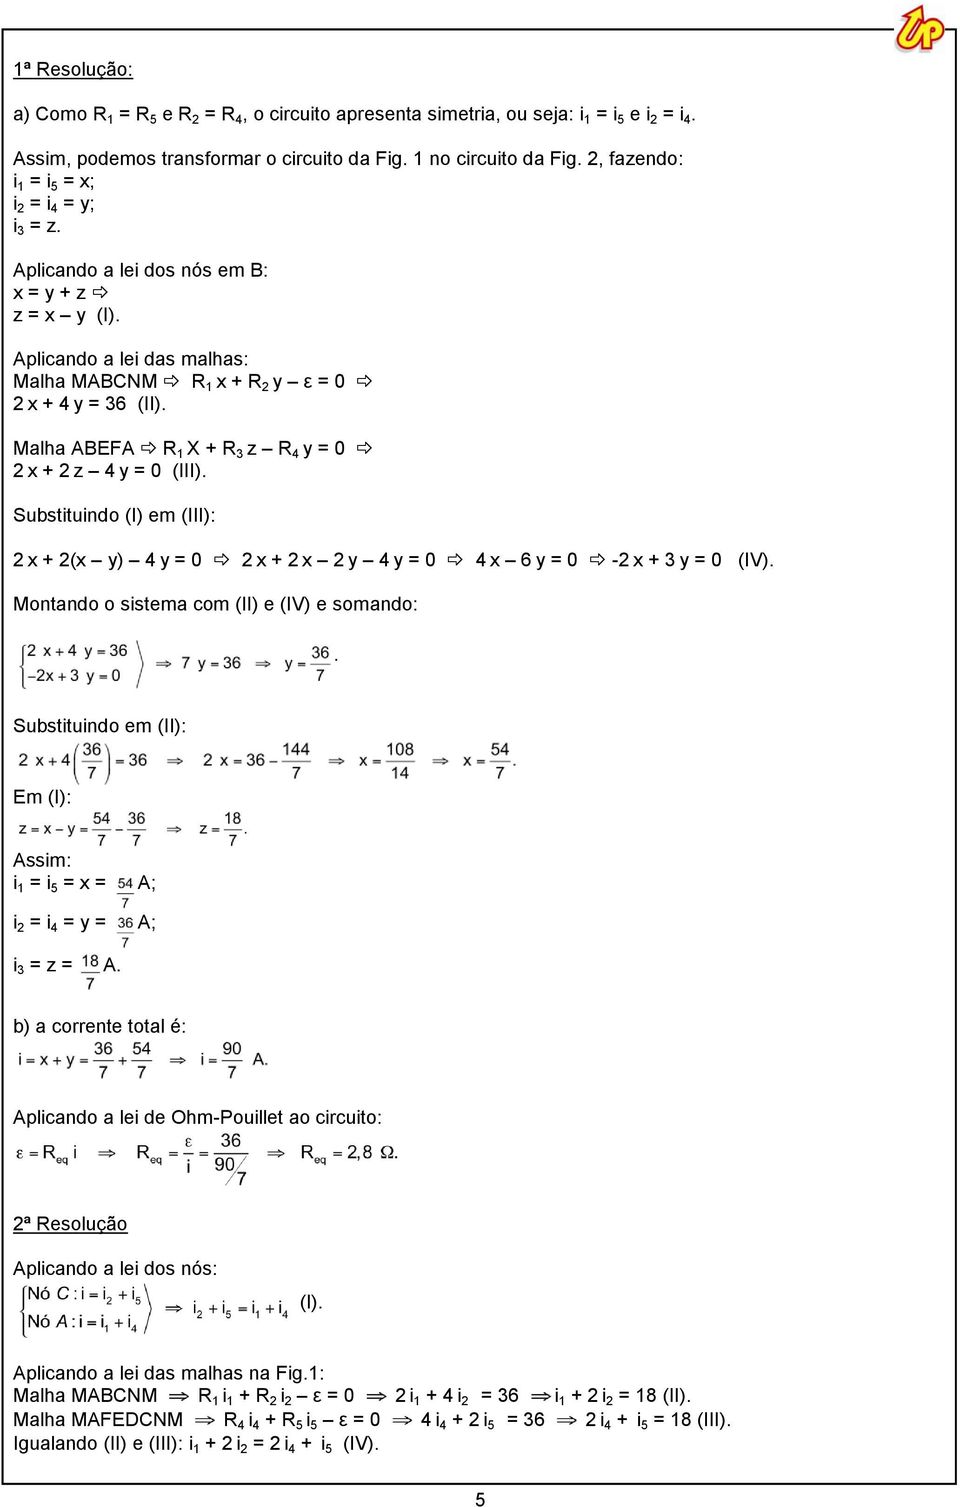 Malha ABEFA R 1 X + R 3 z R 4 y = 0 2 x + 2 z 4 y = 0 (III). Substituindo (I) em (III): 2 x + 2(x y) 4 y = 0 2 x + 2 x 2 y 4 y = 0 4 x 6 y = 0-2 x + 3 y = 0 (IV).